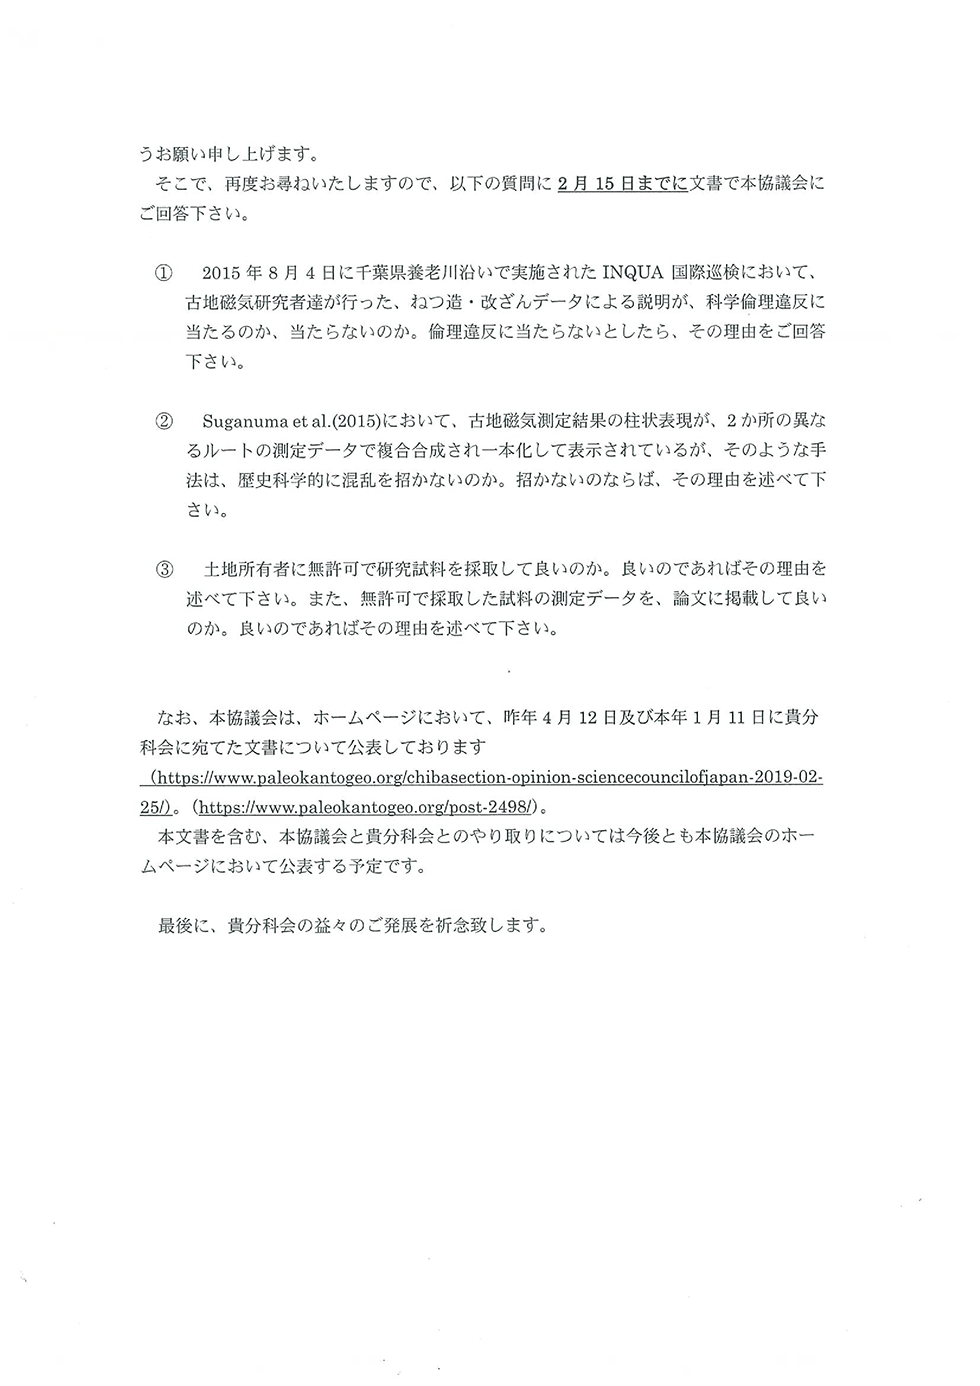 日本学術会議IUGS分科会への「チバニアン」申請に関連した質問と要望について回答のお願い